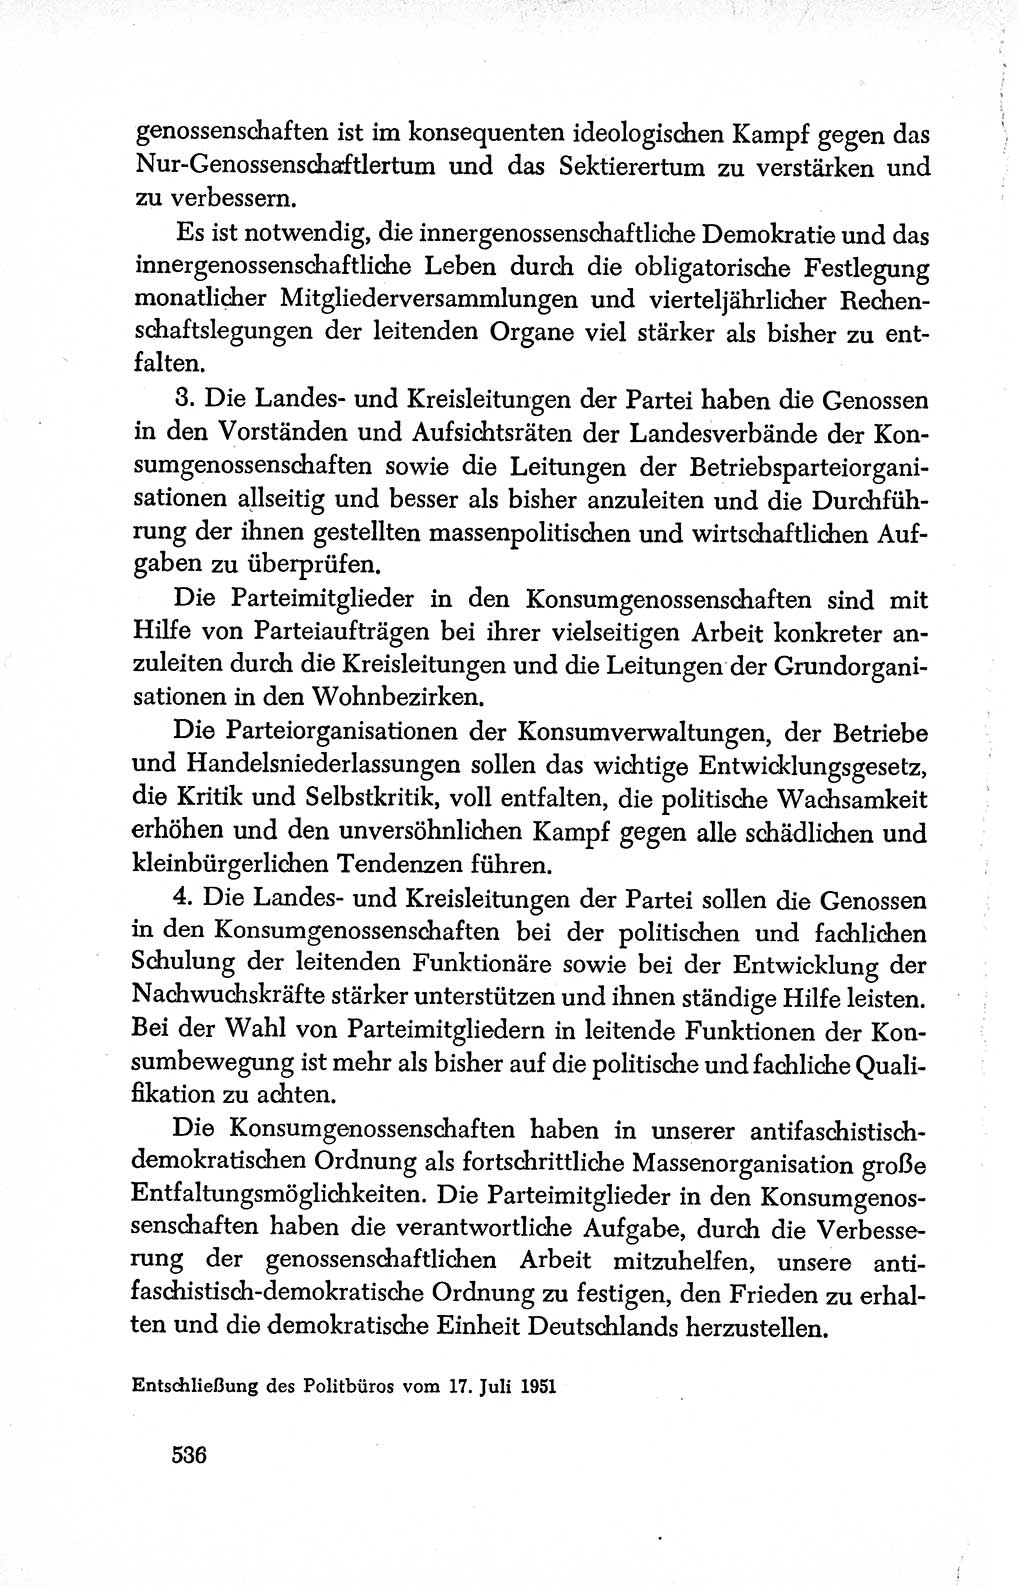 Dokumente der Sozialistischen Einheitspartei Deutschlands (SED) [Deutsche Demokratische Republik (DDR)] 1950-1952, Seite 536 (Dok. SED DDR 1950-1952, S. 536)